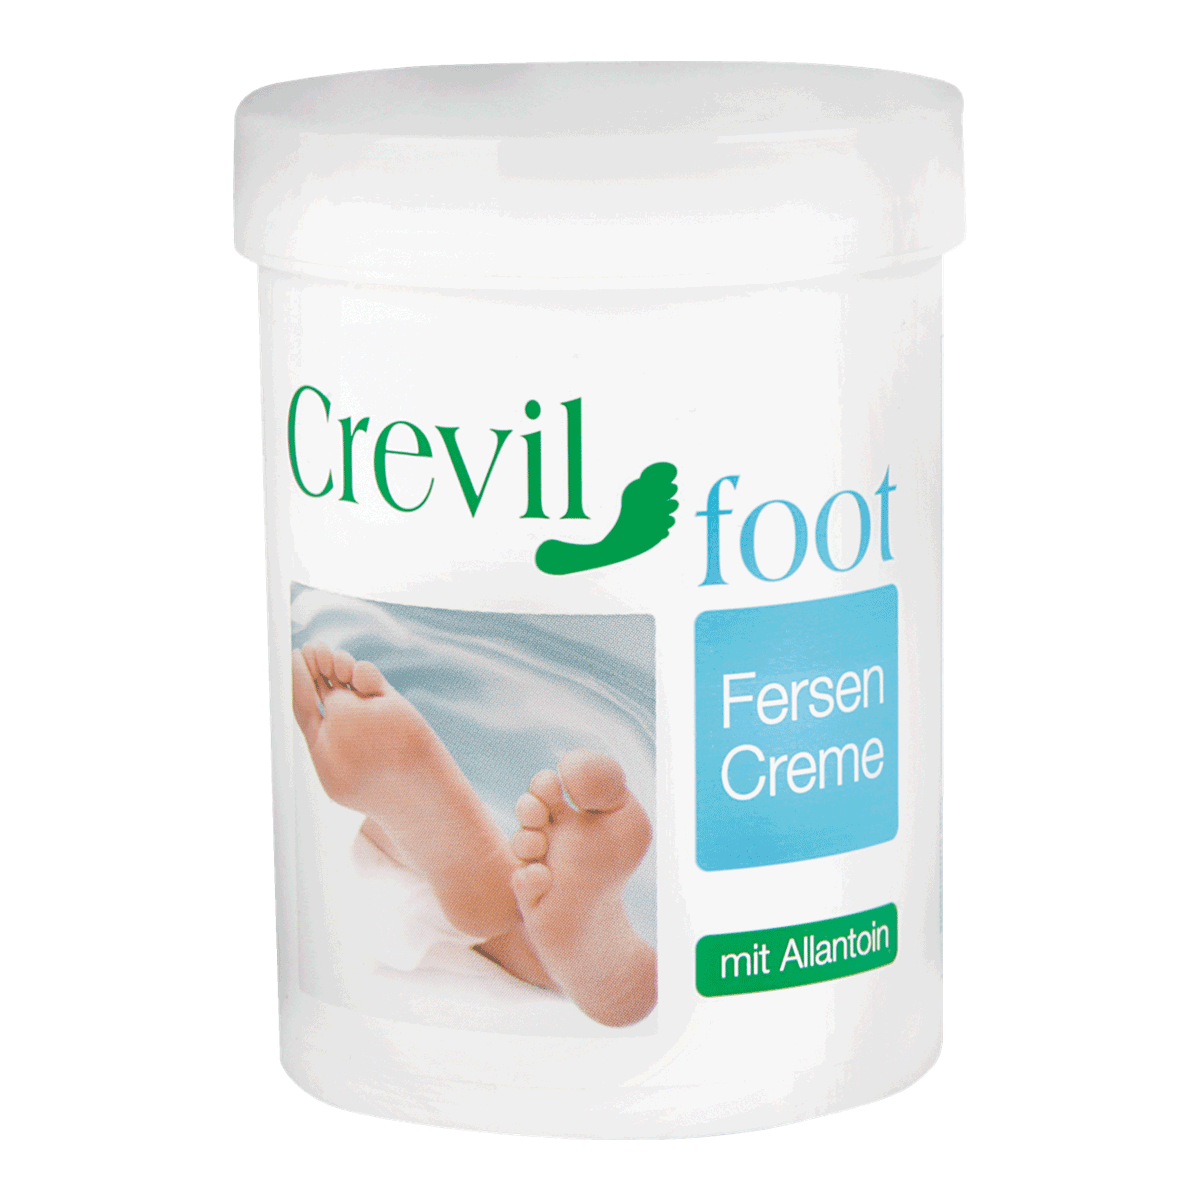 Crevil Fersencreme - Anti Hornhaut - auch für Hände und Ellenbogen geeignet